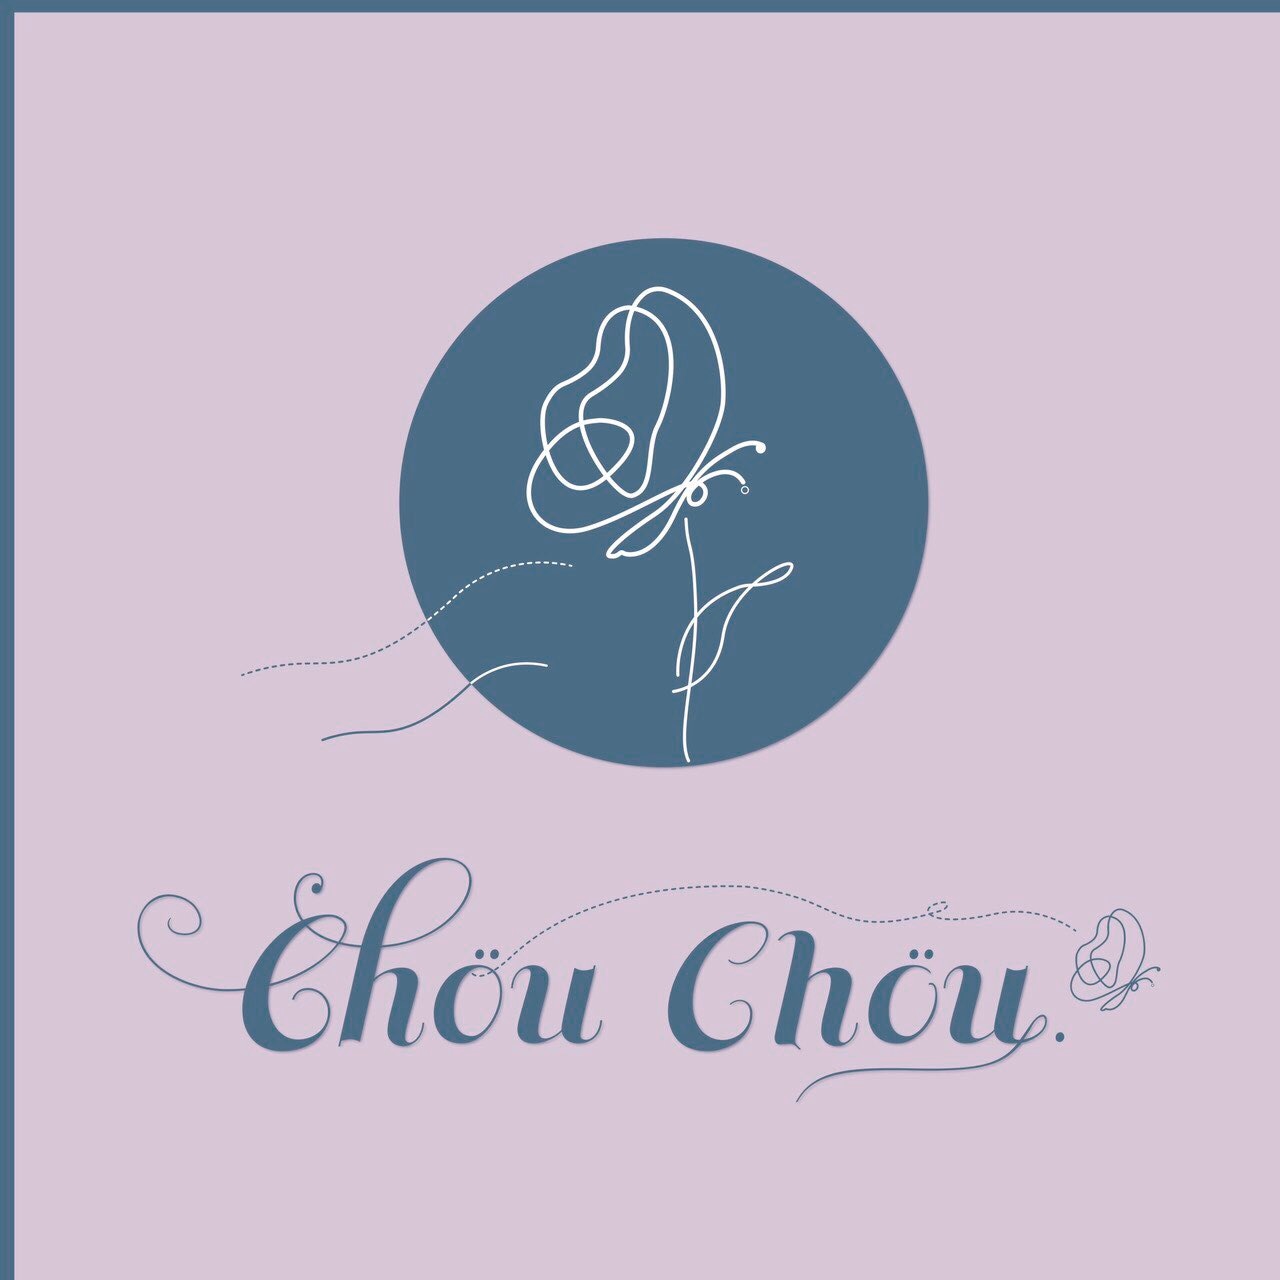 Chöu Chöu. 公式オンラインショップ